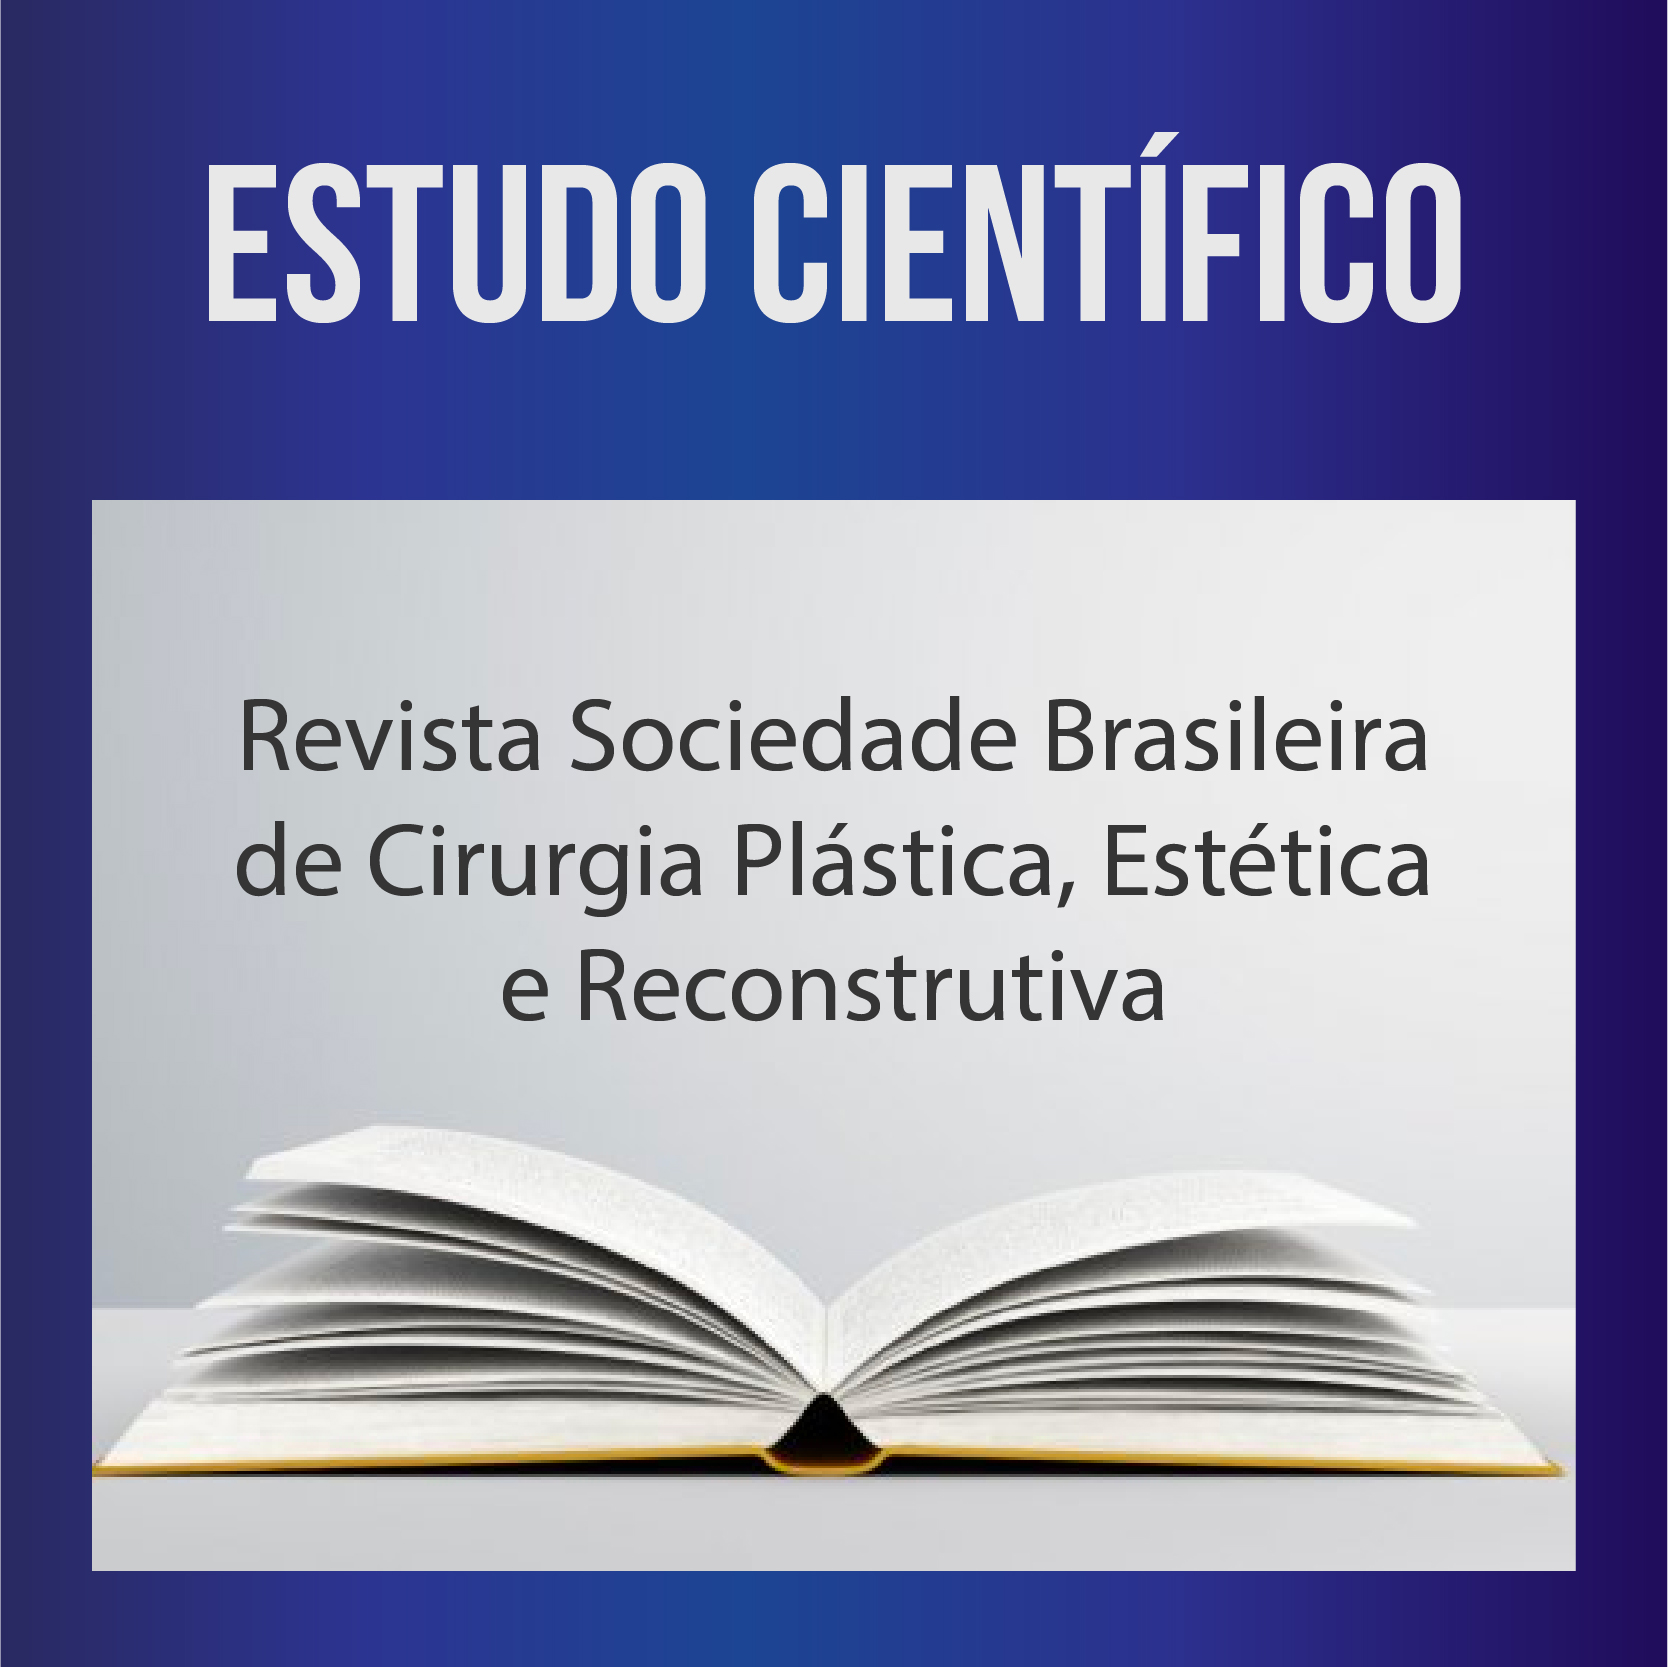 Revista Sociedade Brasileira de Cirurgia Plástica, Estética e Reconstrutiva